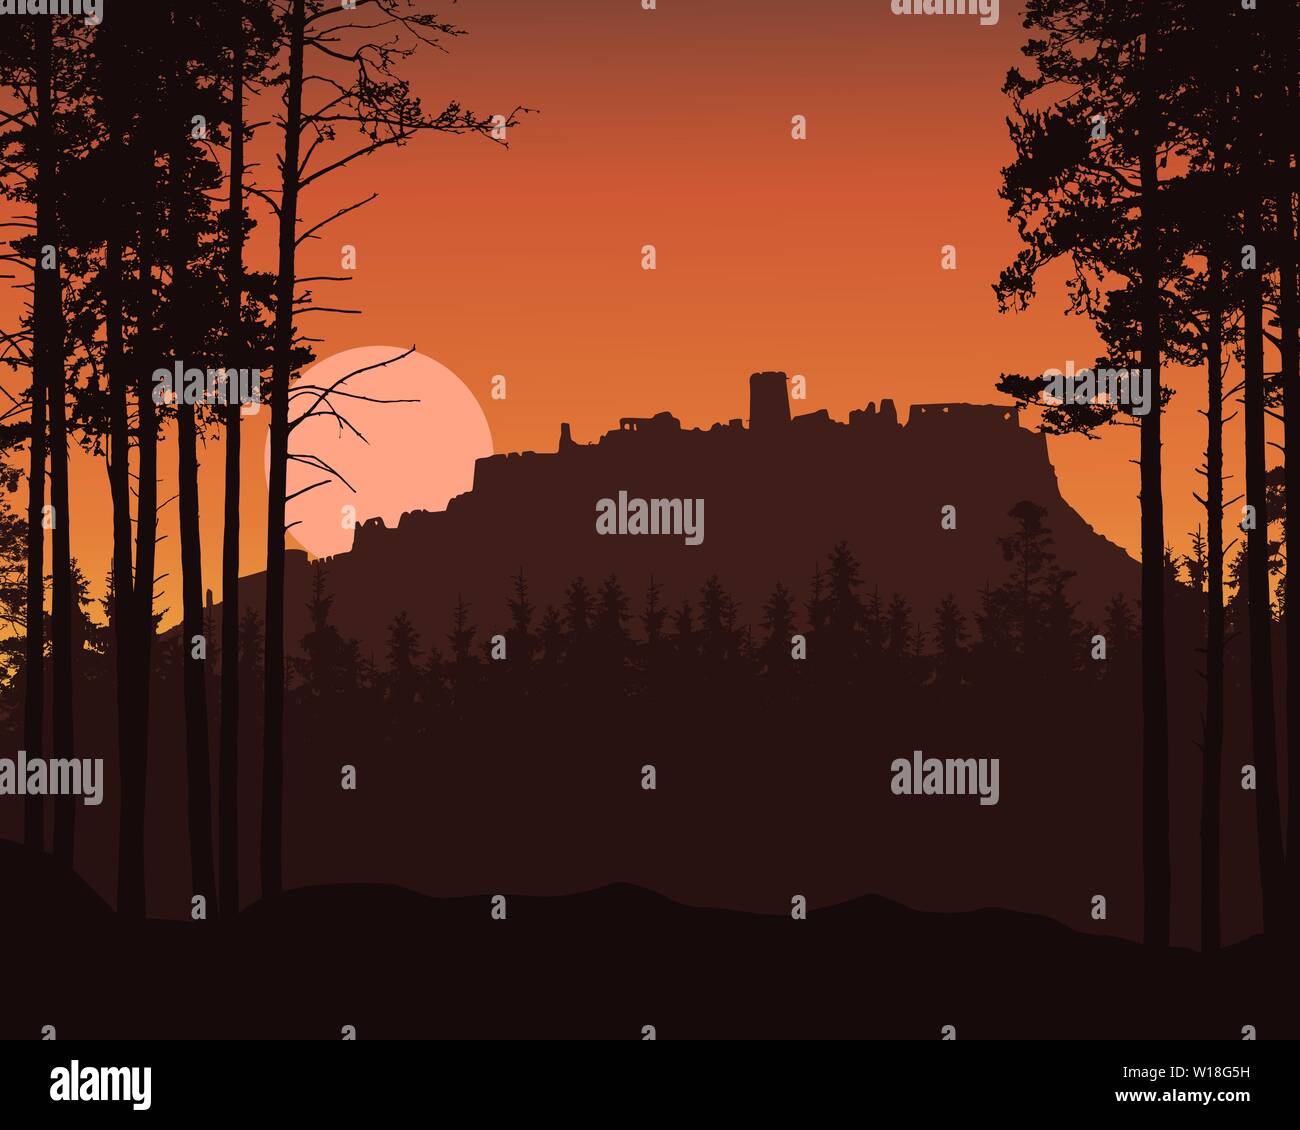 Realistische Darstellung der Berglandschaft mit nadelwald und die Ruinen der alten Burg auf dem Hügel. Steigende oder Einstellung der Sonne oder Mond auf Red Sky-Vektor Stock Vektor